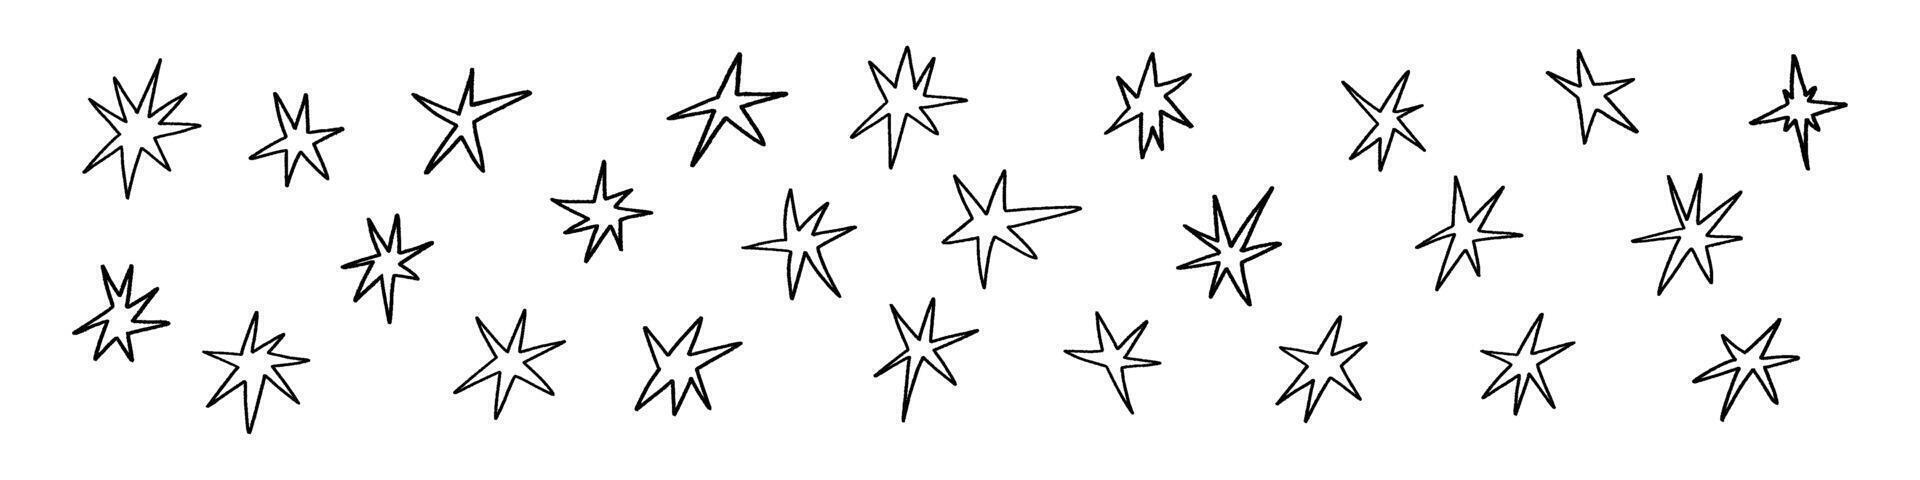 mano dibujado estrella formas con lápiz de color y lápiz texturas plano vector ilustración aislado en blanco antecedentes.